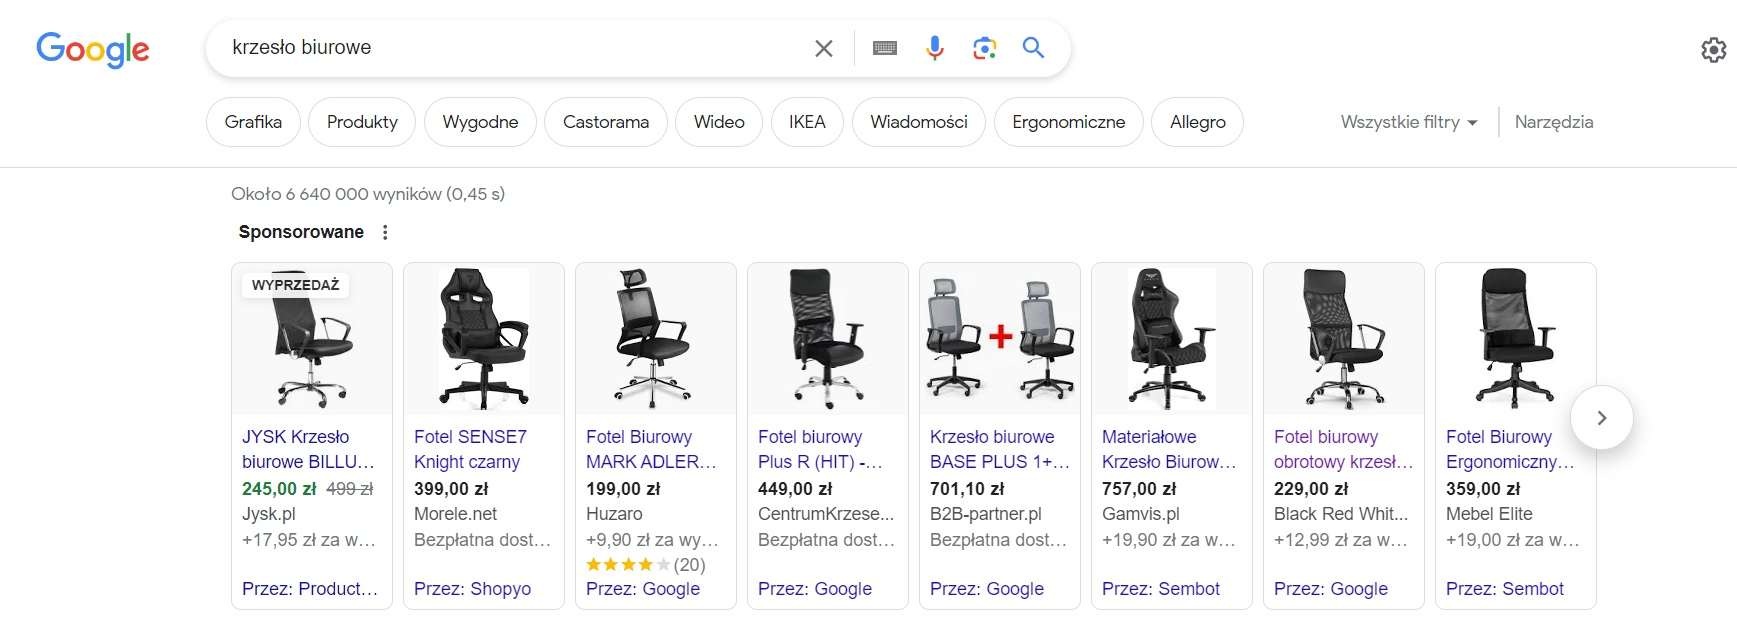 Przykład reklamy produktowej - krzesła biurowe